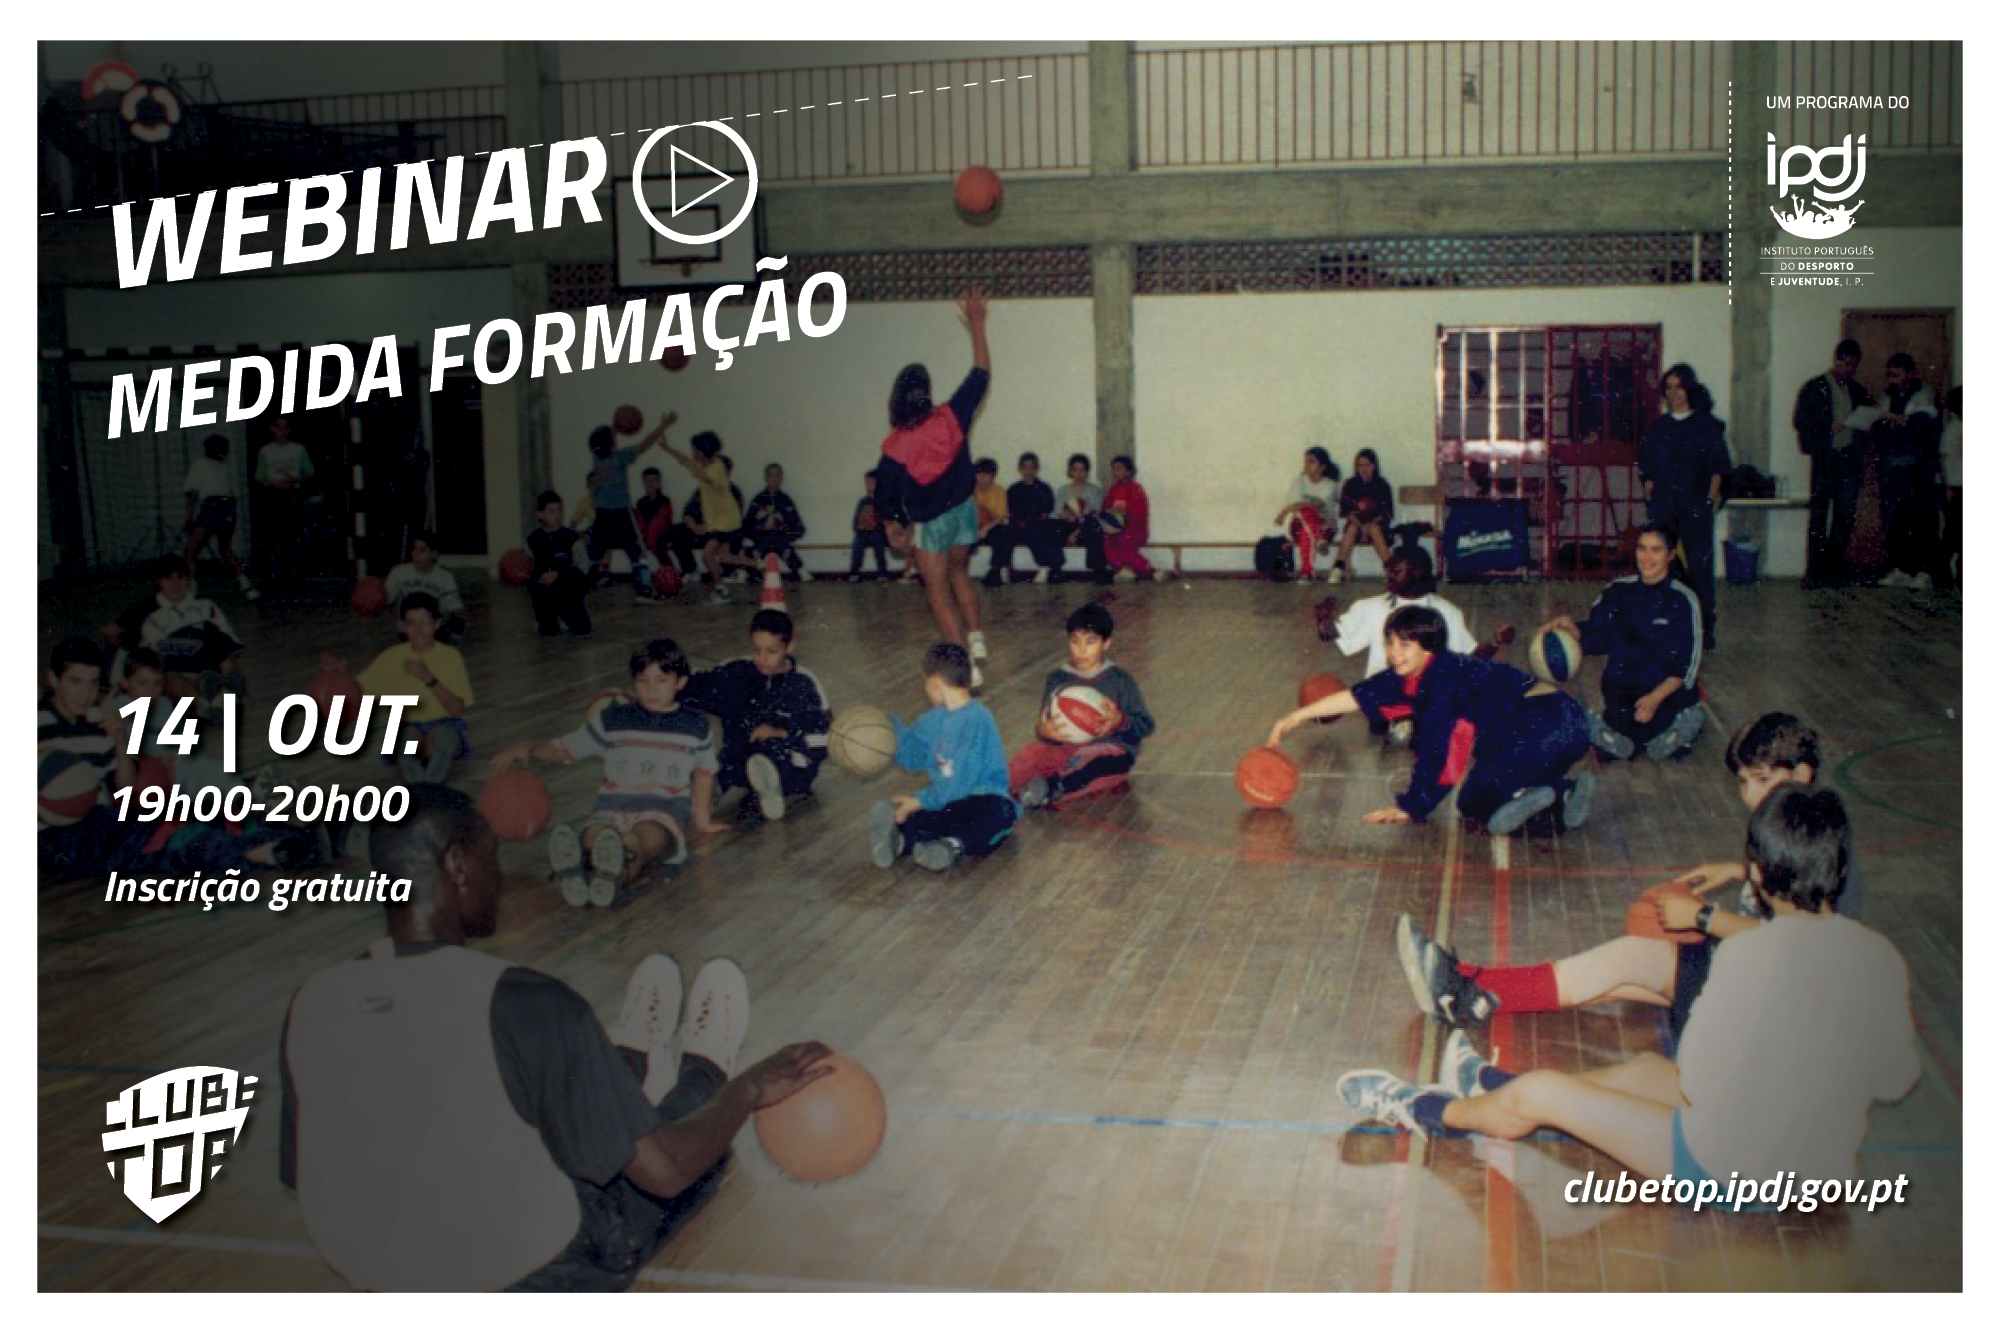 Lettering Webinar «Clube Top - Medida Formação», com uma fotografia de jovens dentro de um ginásio.